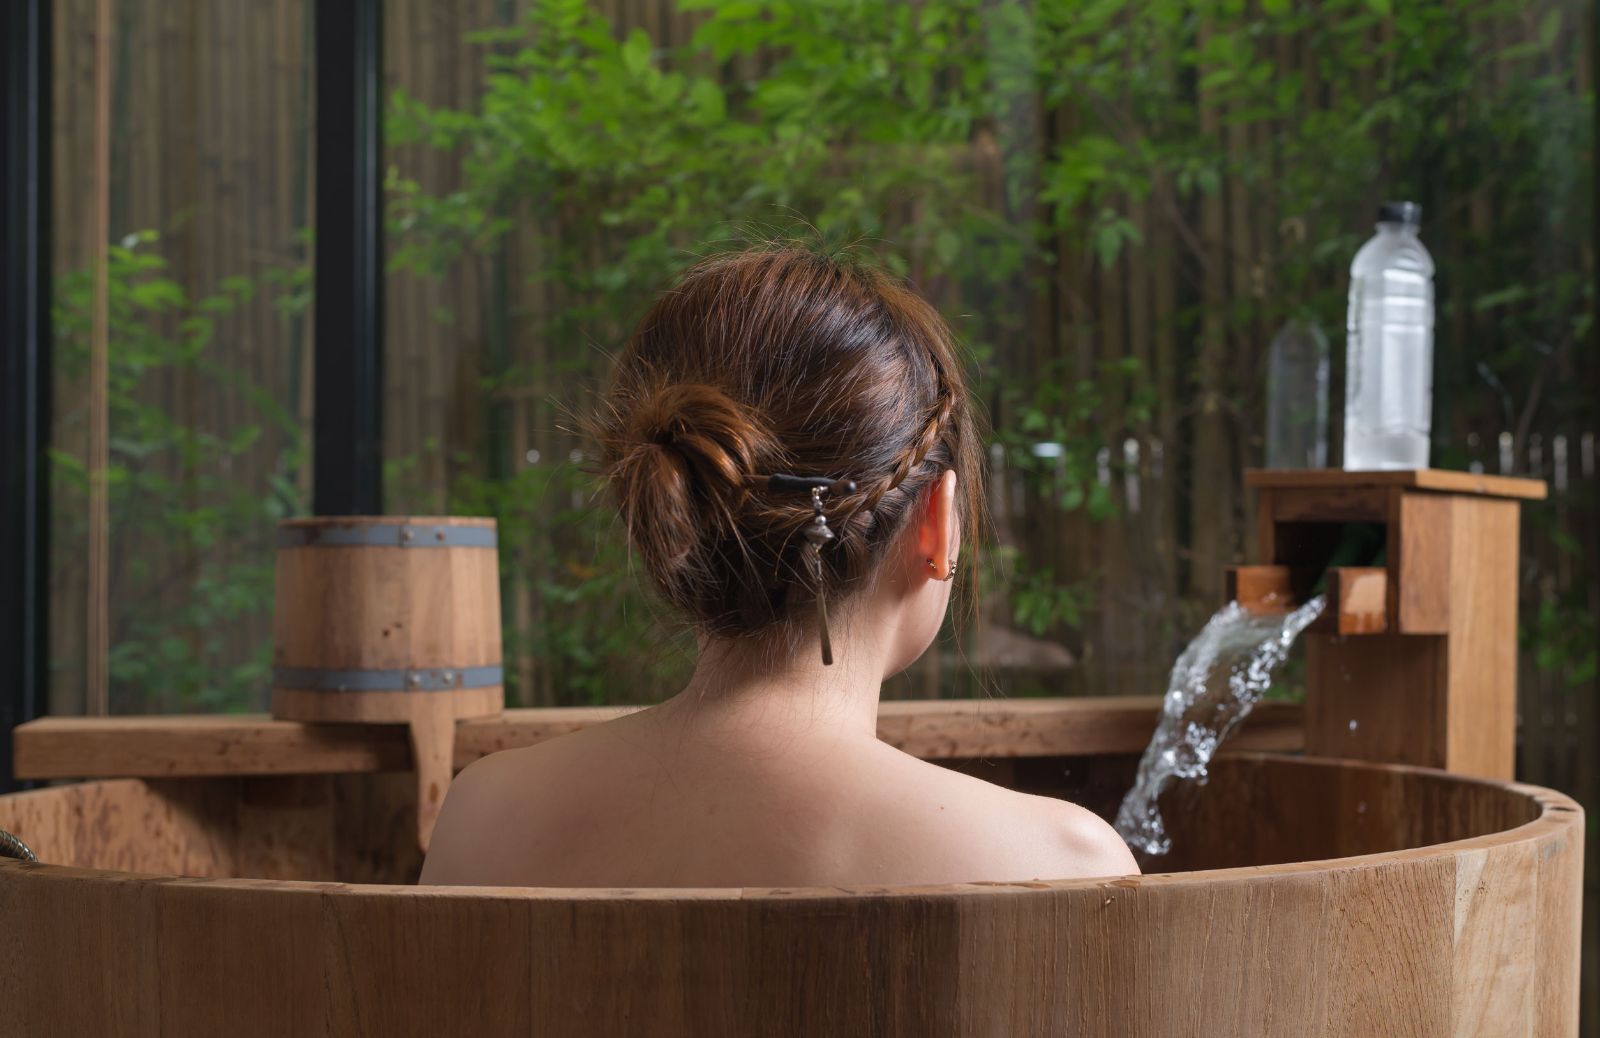 Le caratteristiche di un tipico bagno giapponese